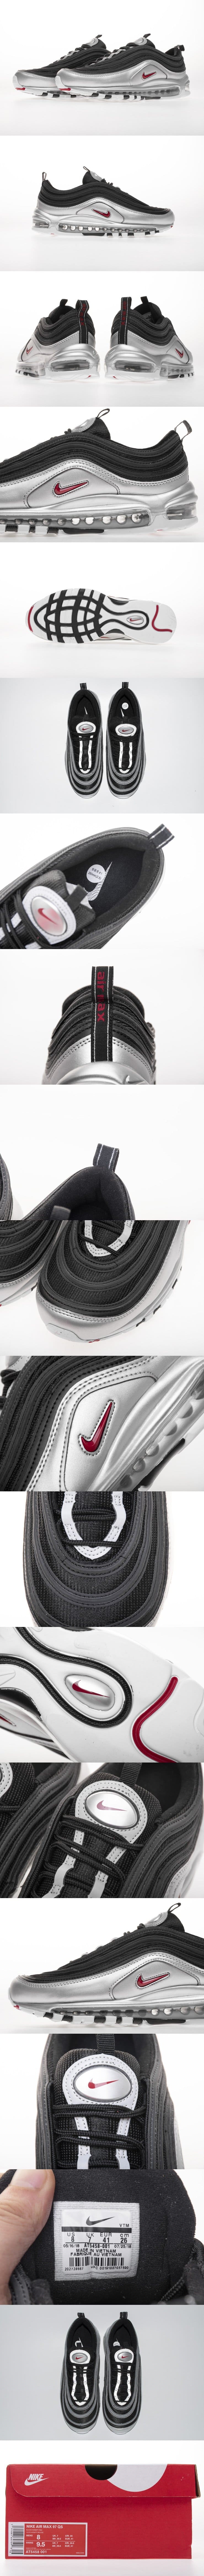 Nike Air Max 97 QS Liquid silver AT5458-001 ナイキ エアマックス 97 クイックストライク リキットシルバー black